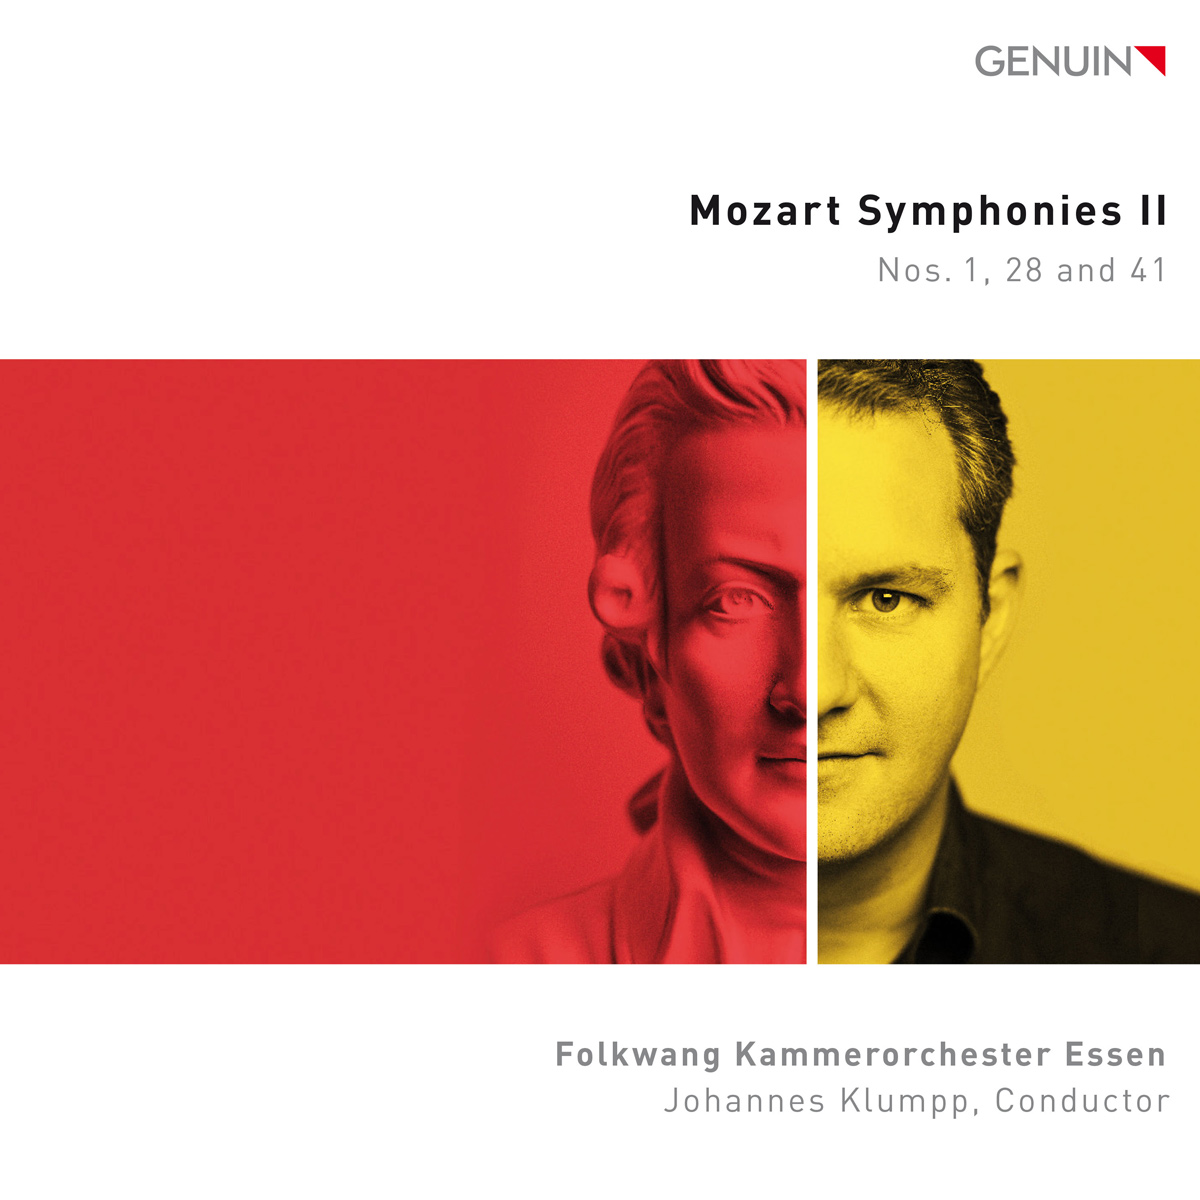 CD album cover 'Mozart Symphonies II' (GEN 22783) with Folkwang Kammerorchester Essen, Johannes Klumpp